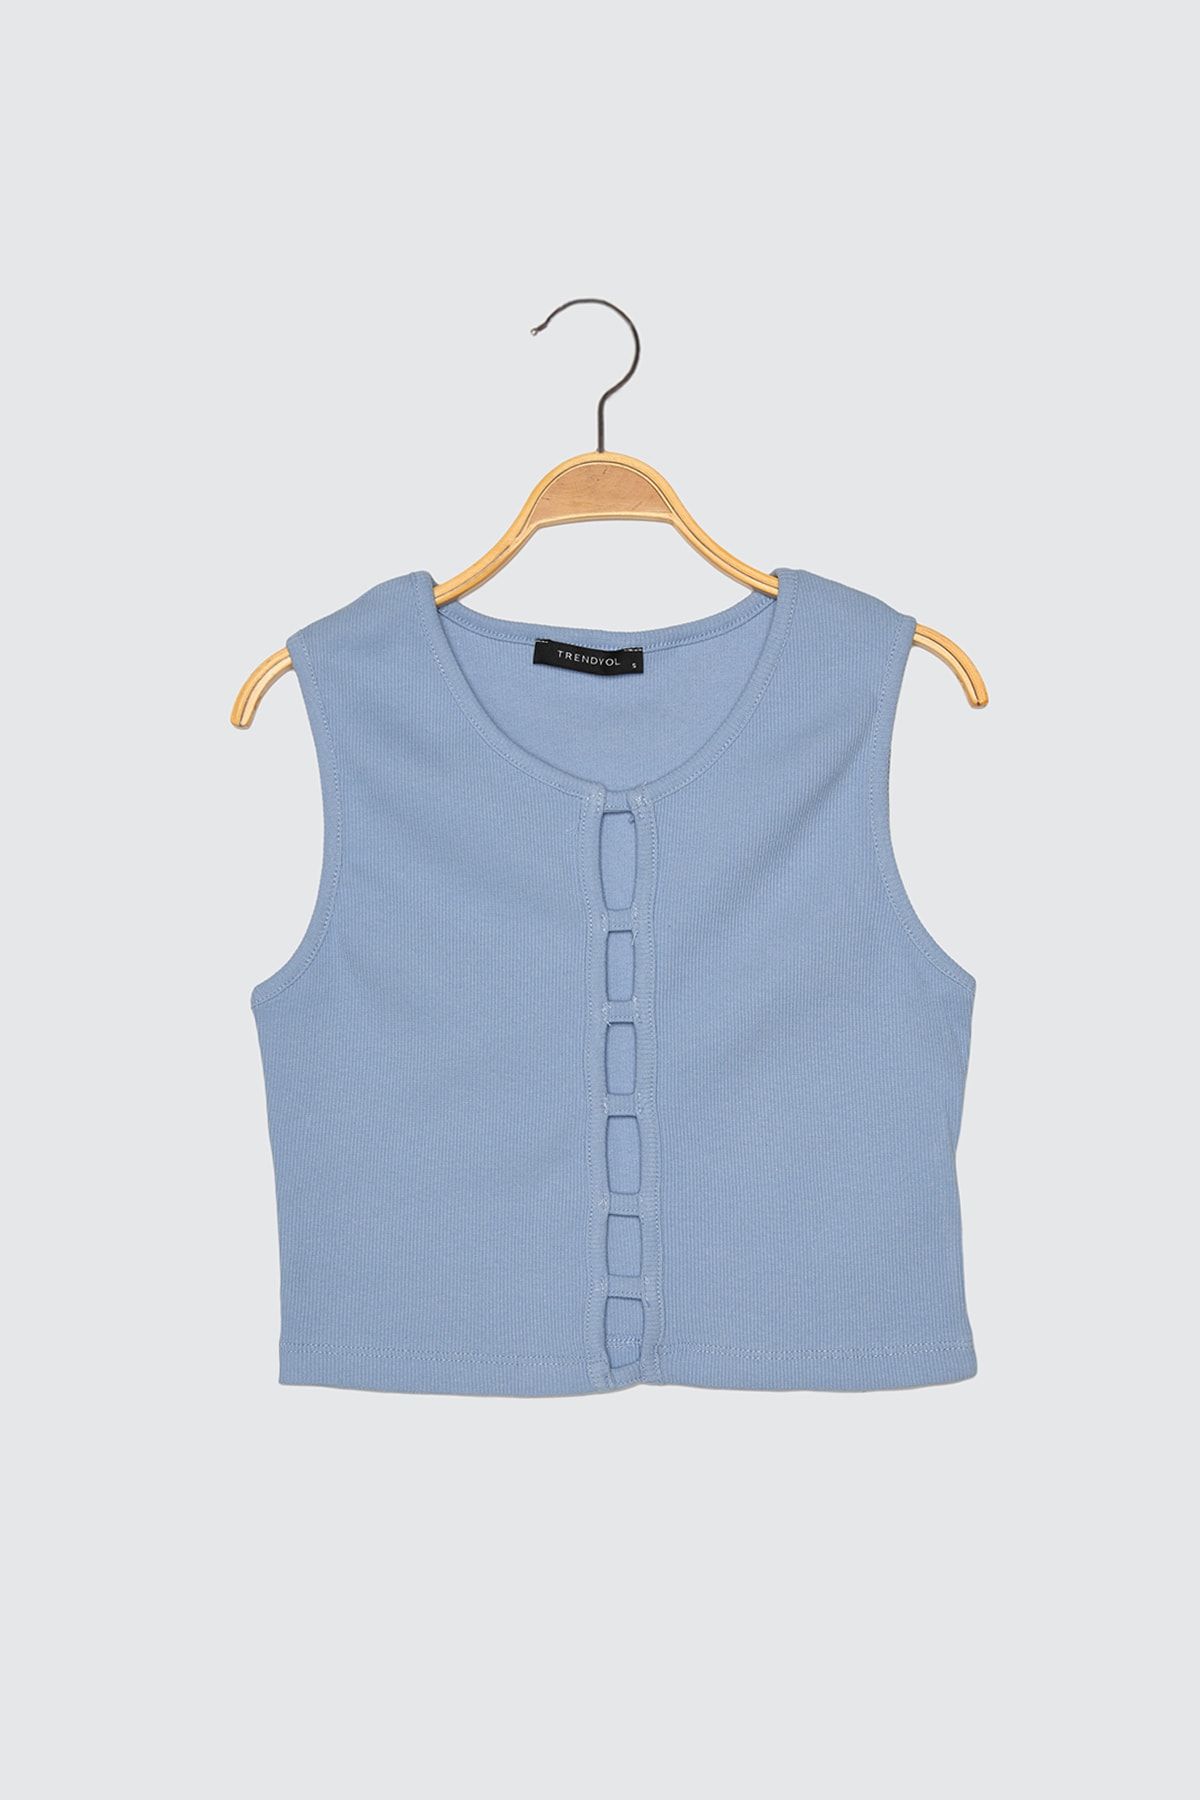 TRENDYOLMİLLA Açık Mavi Cut Out Detaylı Crop Örme Bluz TWOSS21BZ0740